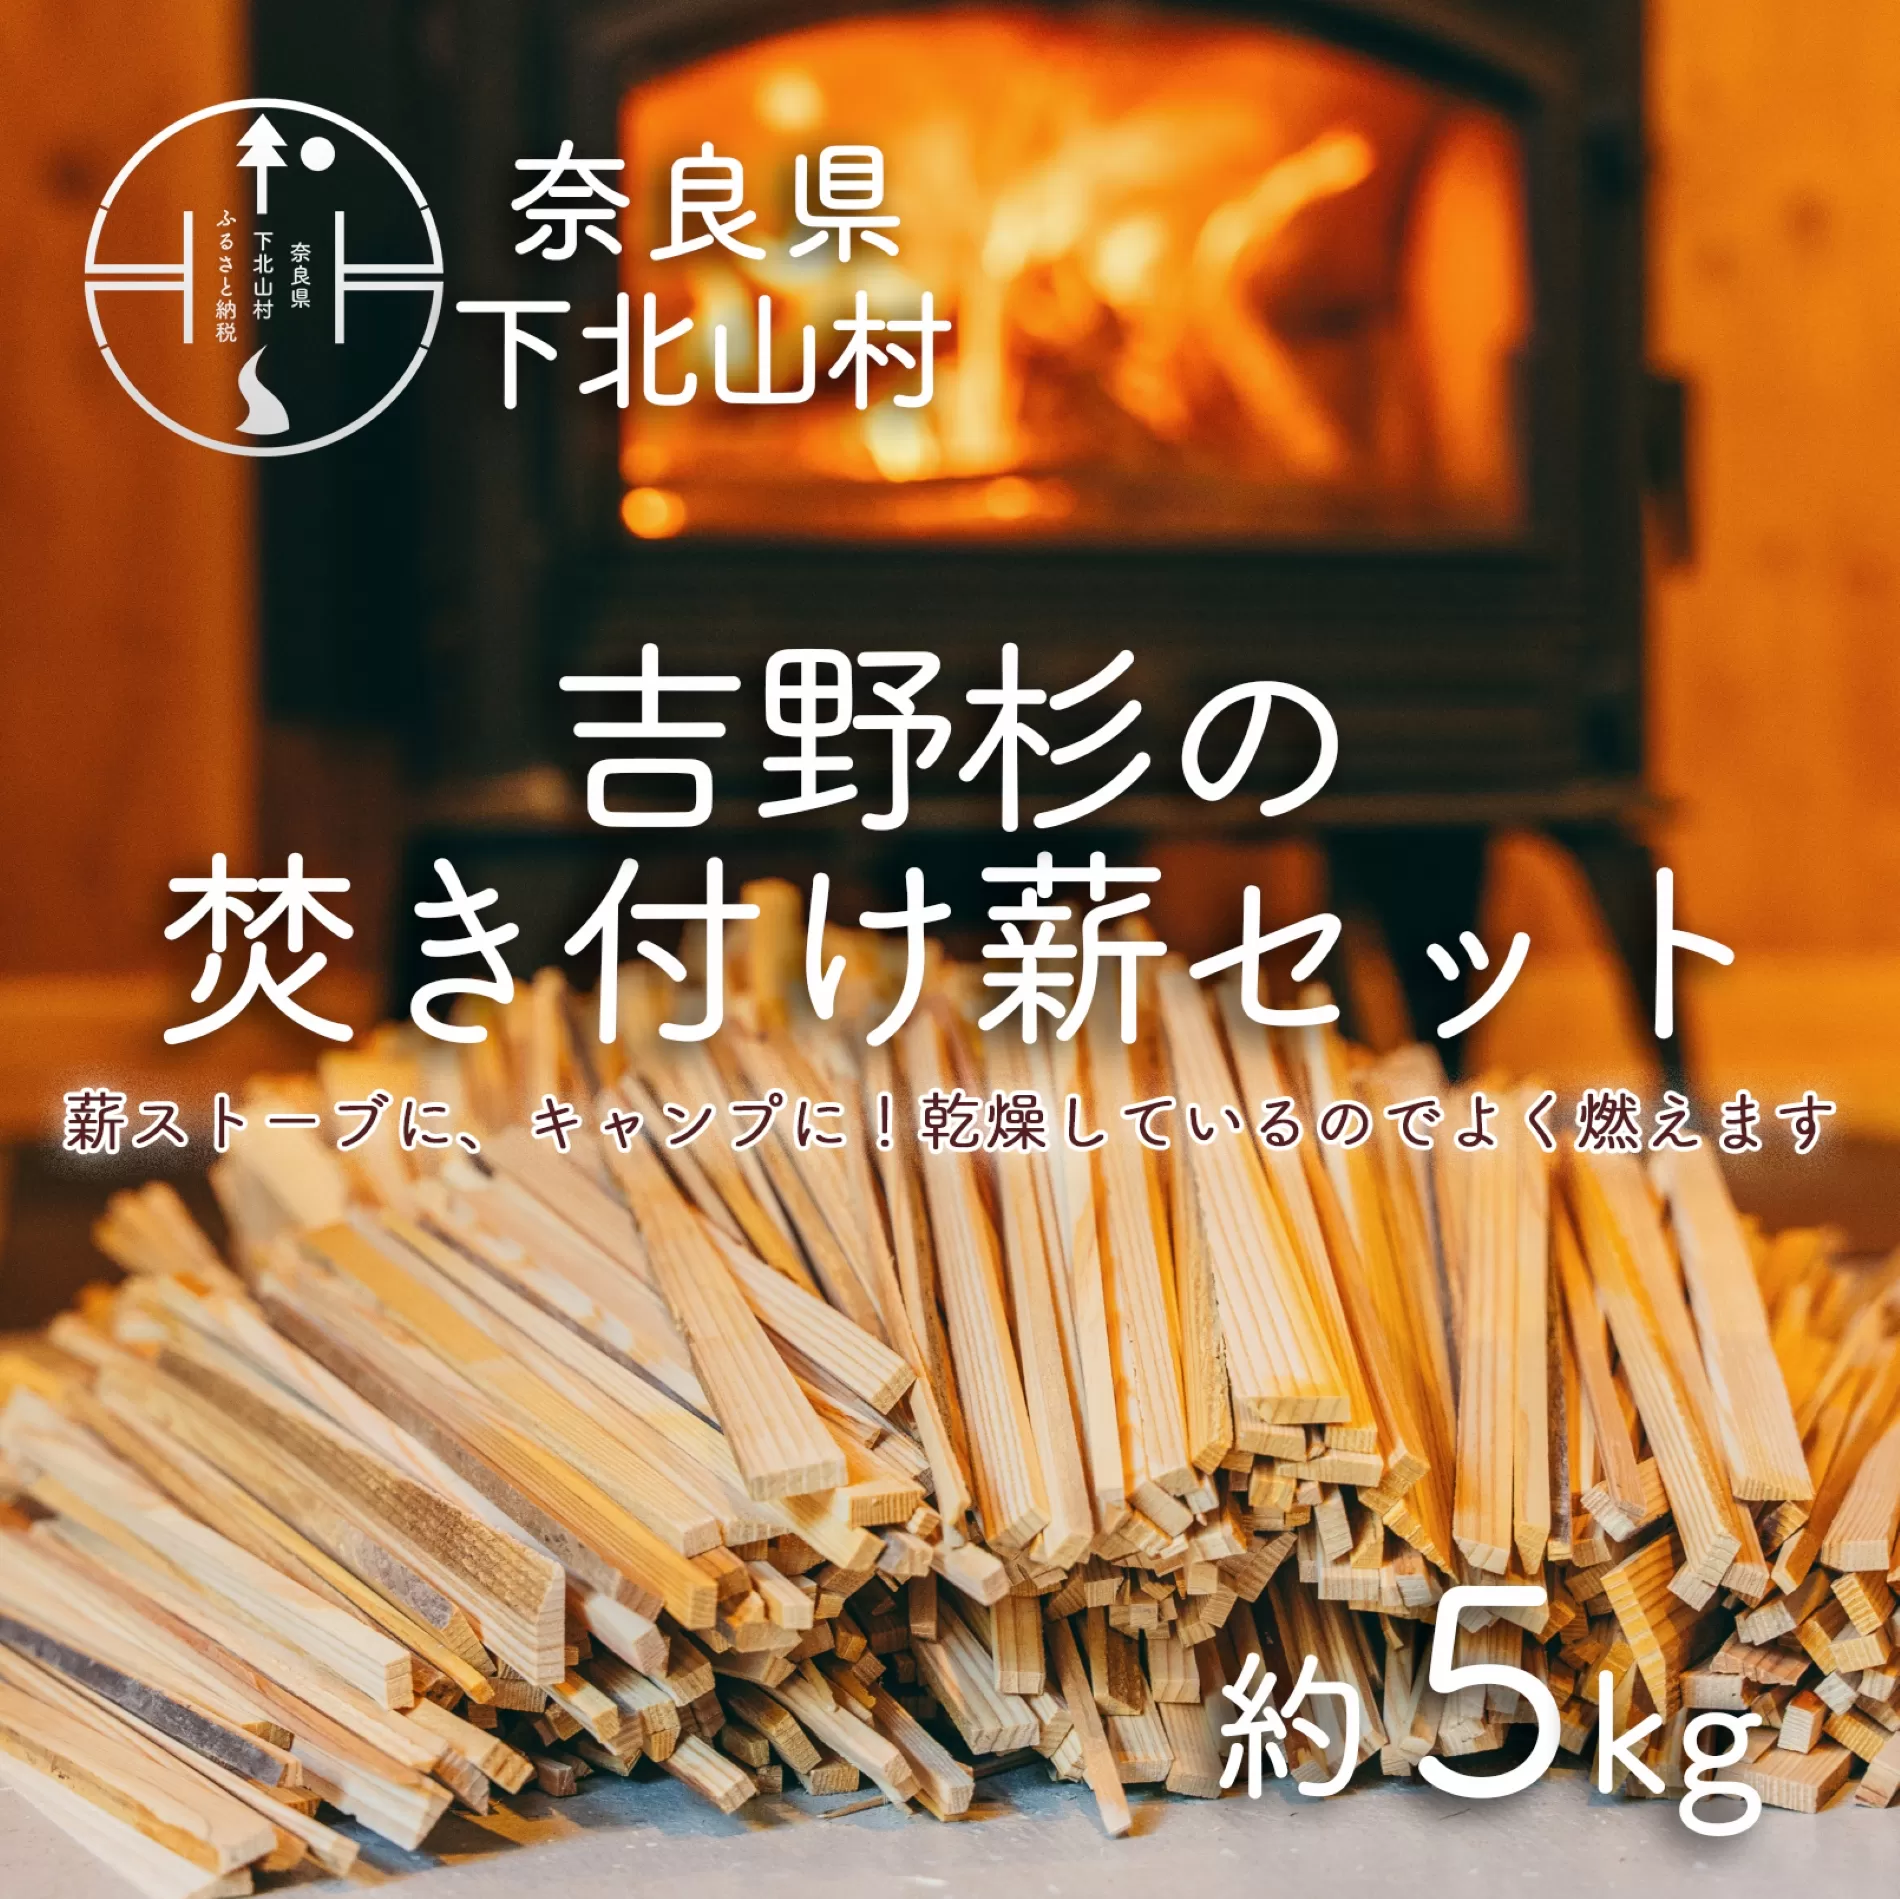 焚き付け薪セット 杉21~24cm 約5kg 奈良県産材 乾燥材 カンナくず付き 薪ストーブ アウトドア キャンプ 焚き火用 便利